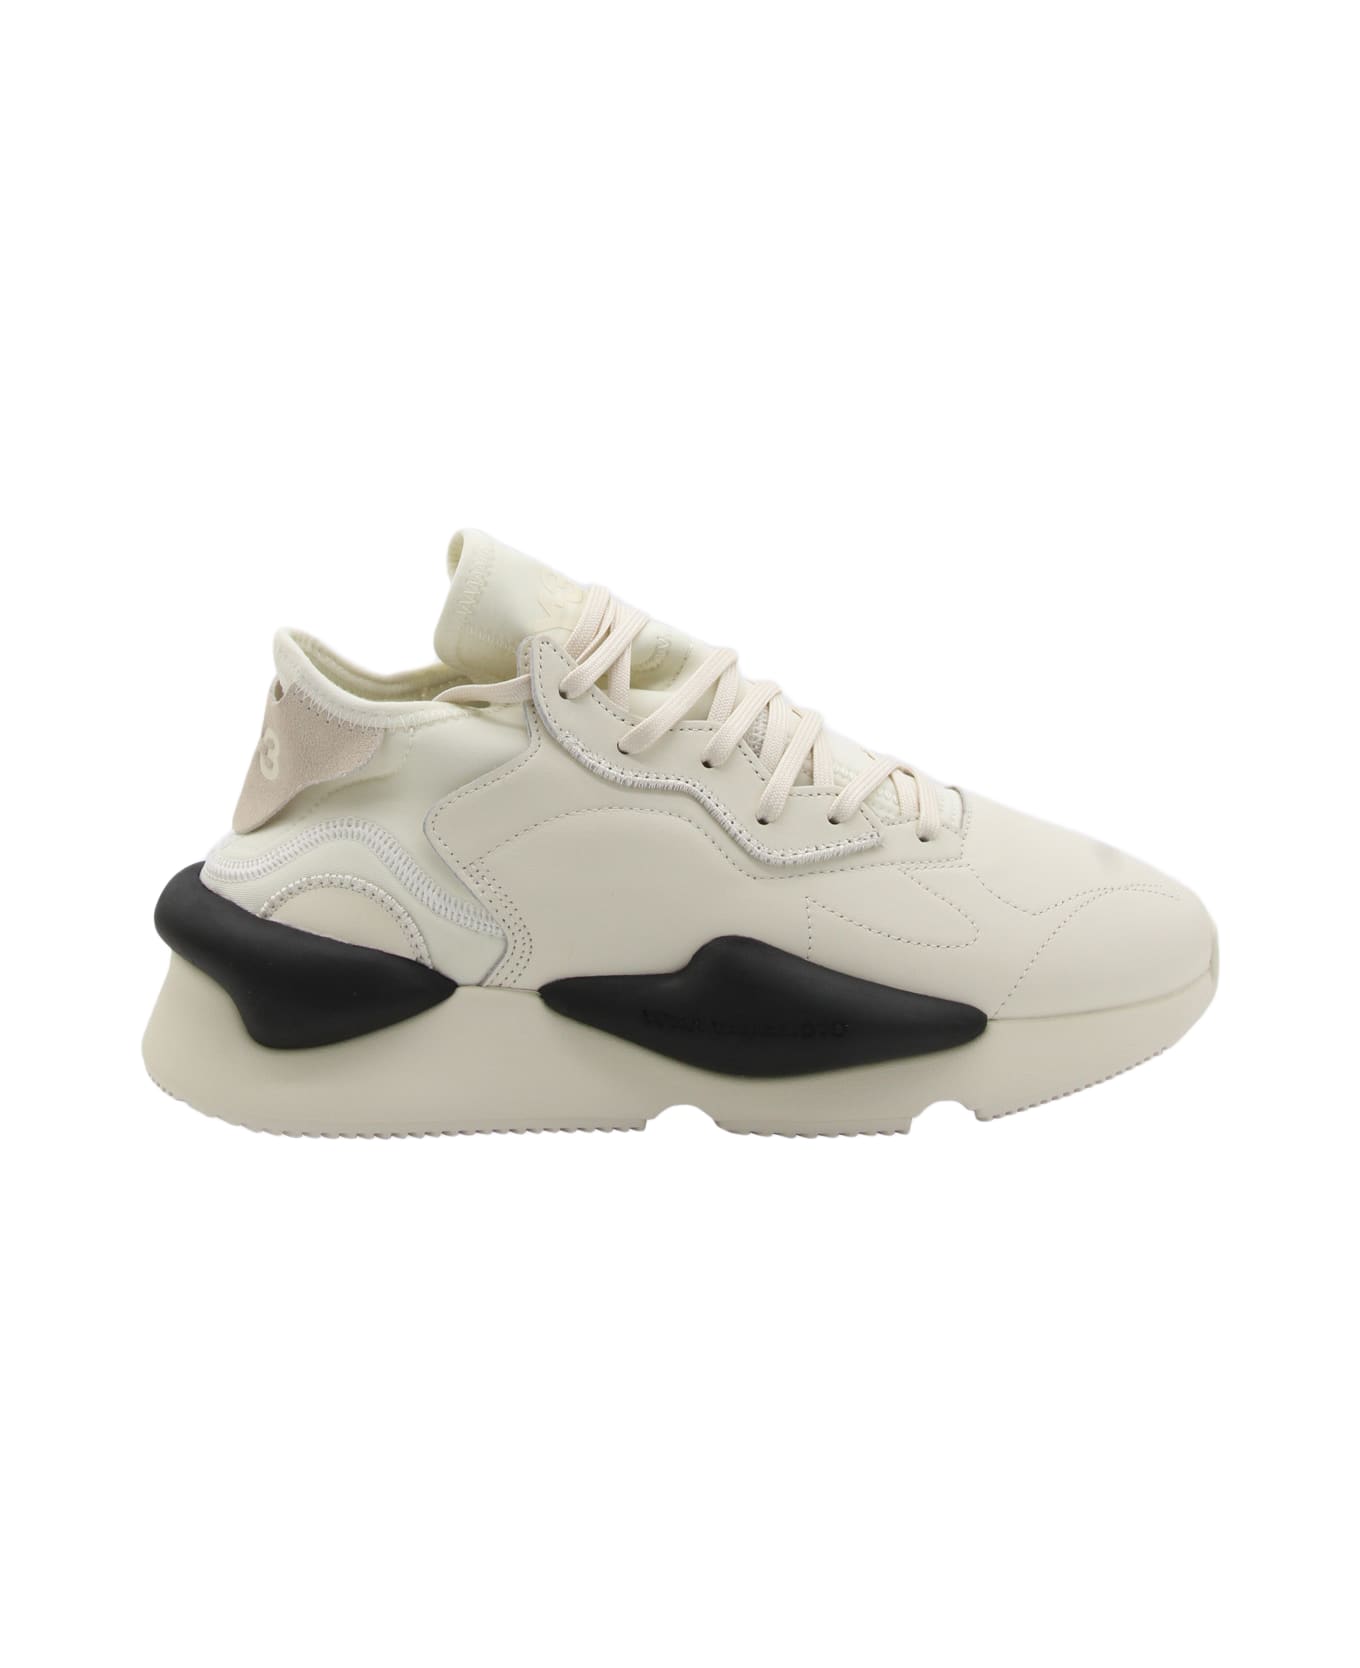 Y-3 White Leather Kaiwa Sneakers - CREAM WHITE/OFF WHITE/BLACK スニーカー